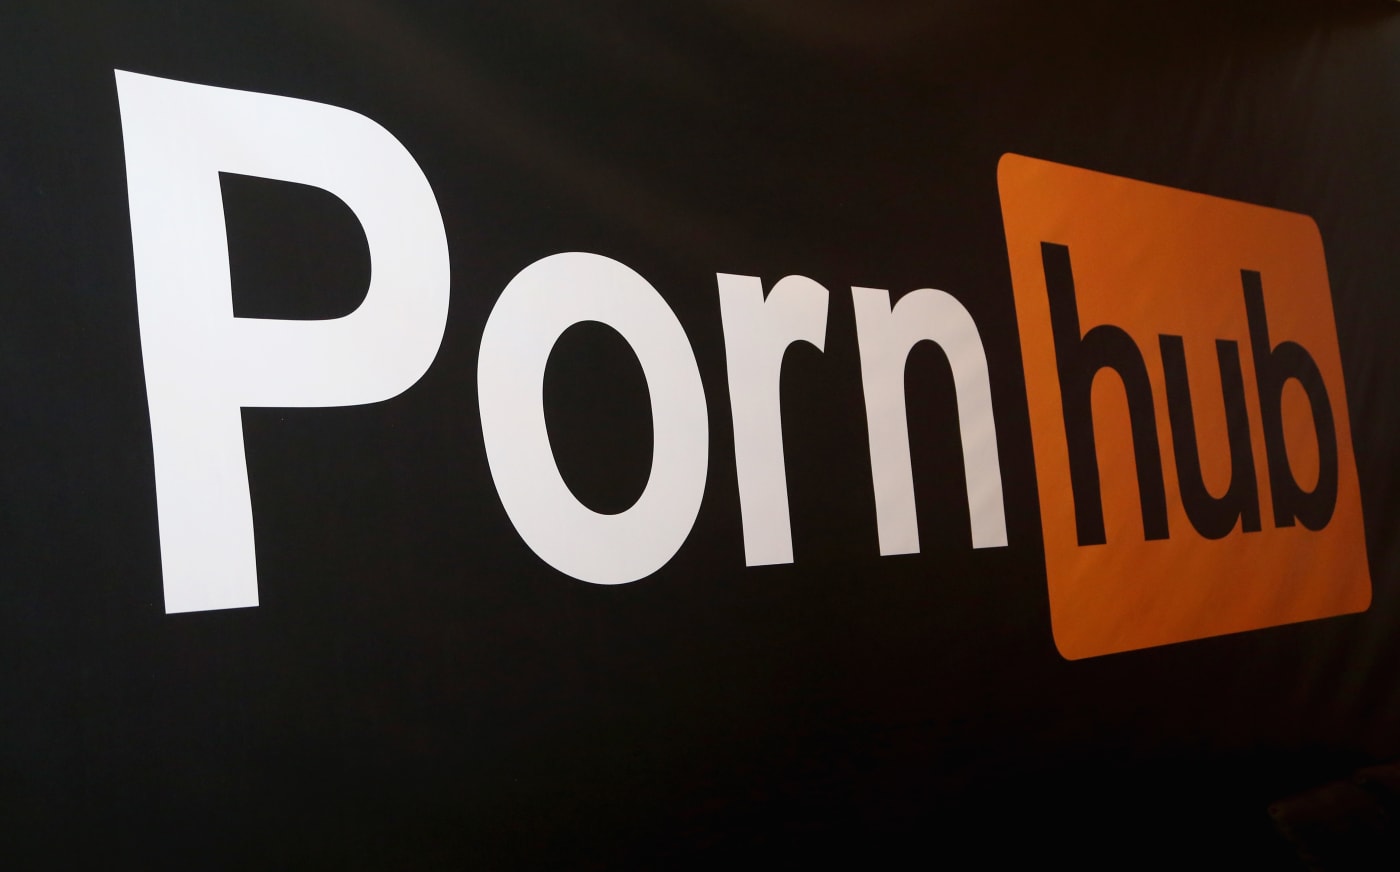 logo of website for pornhub